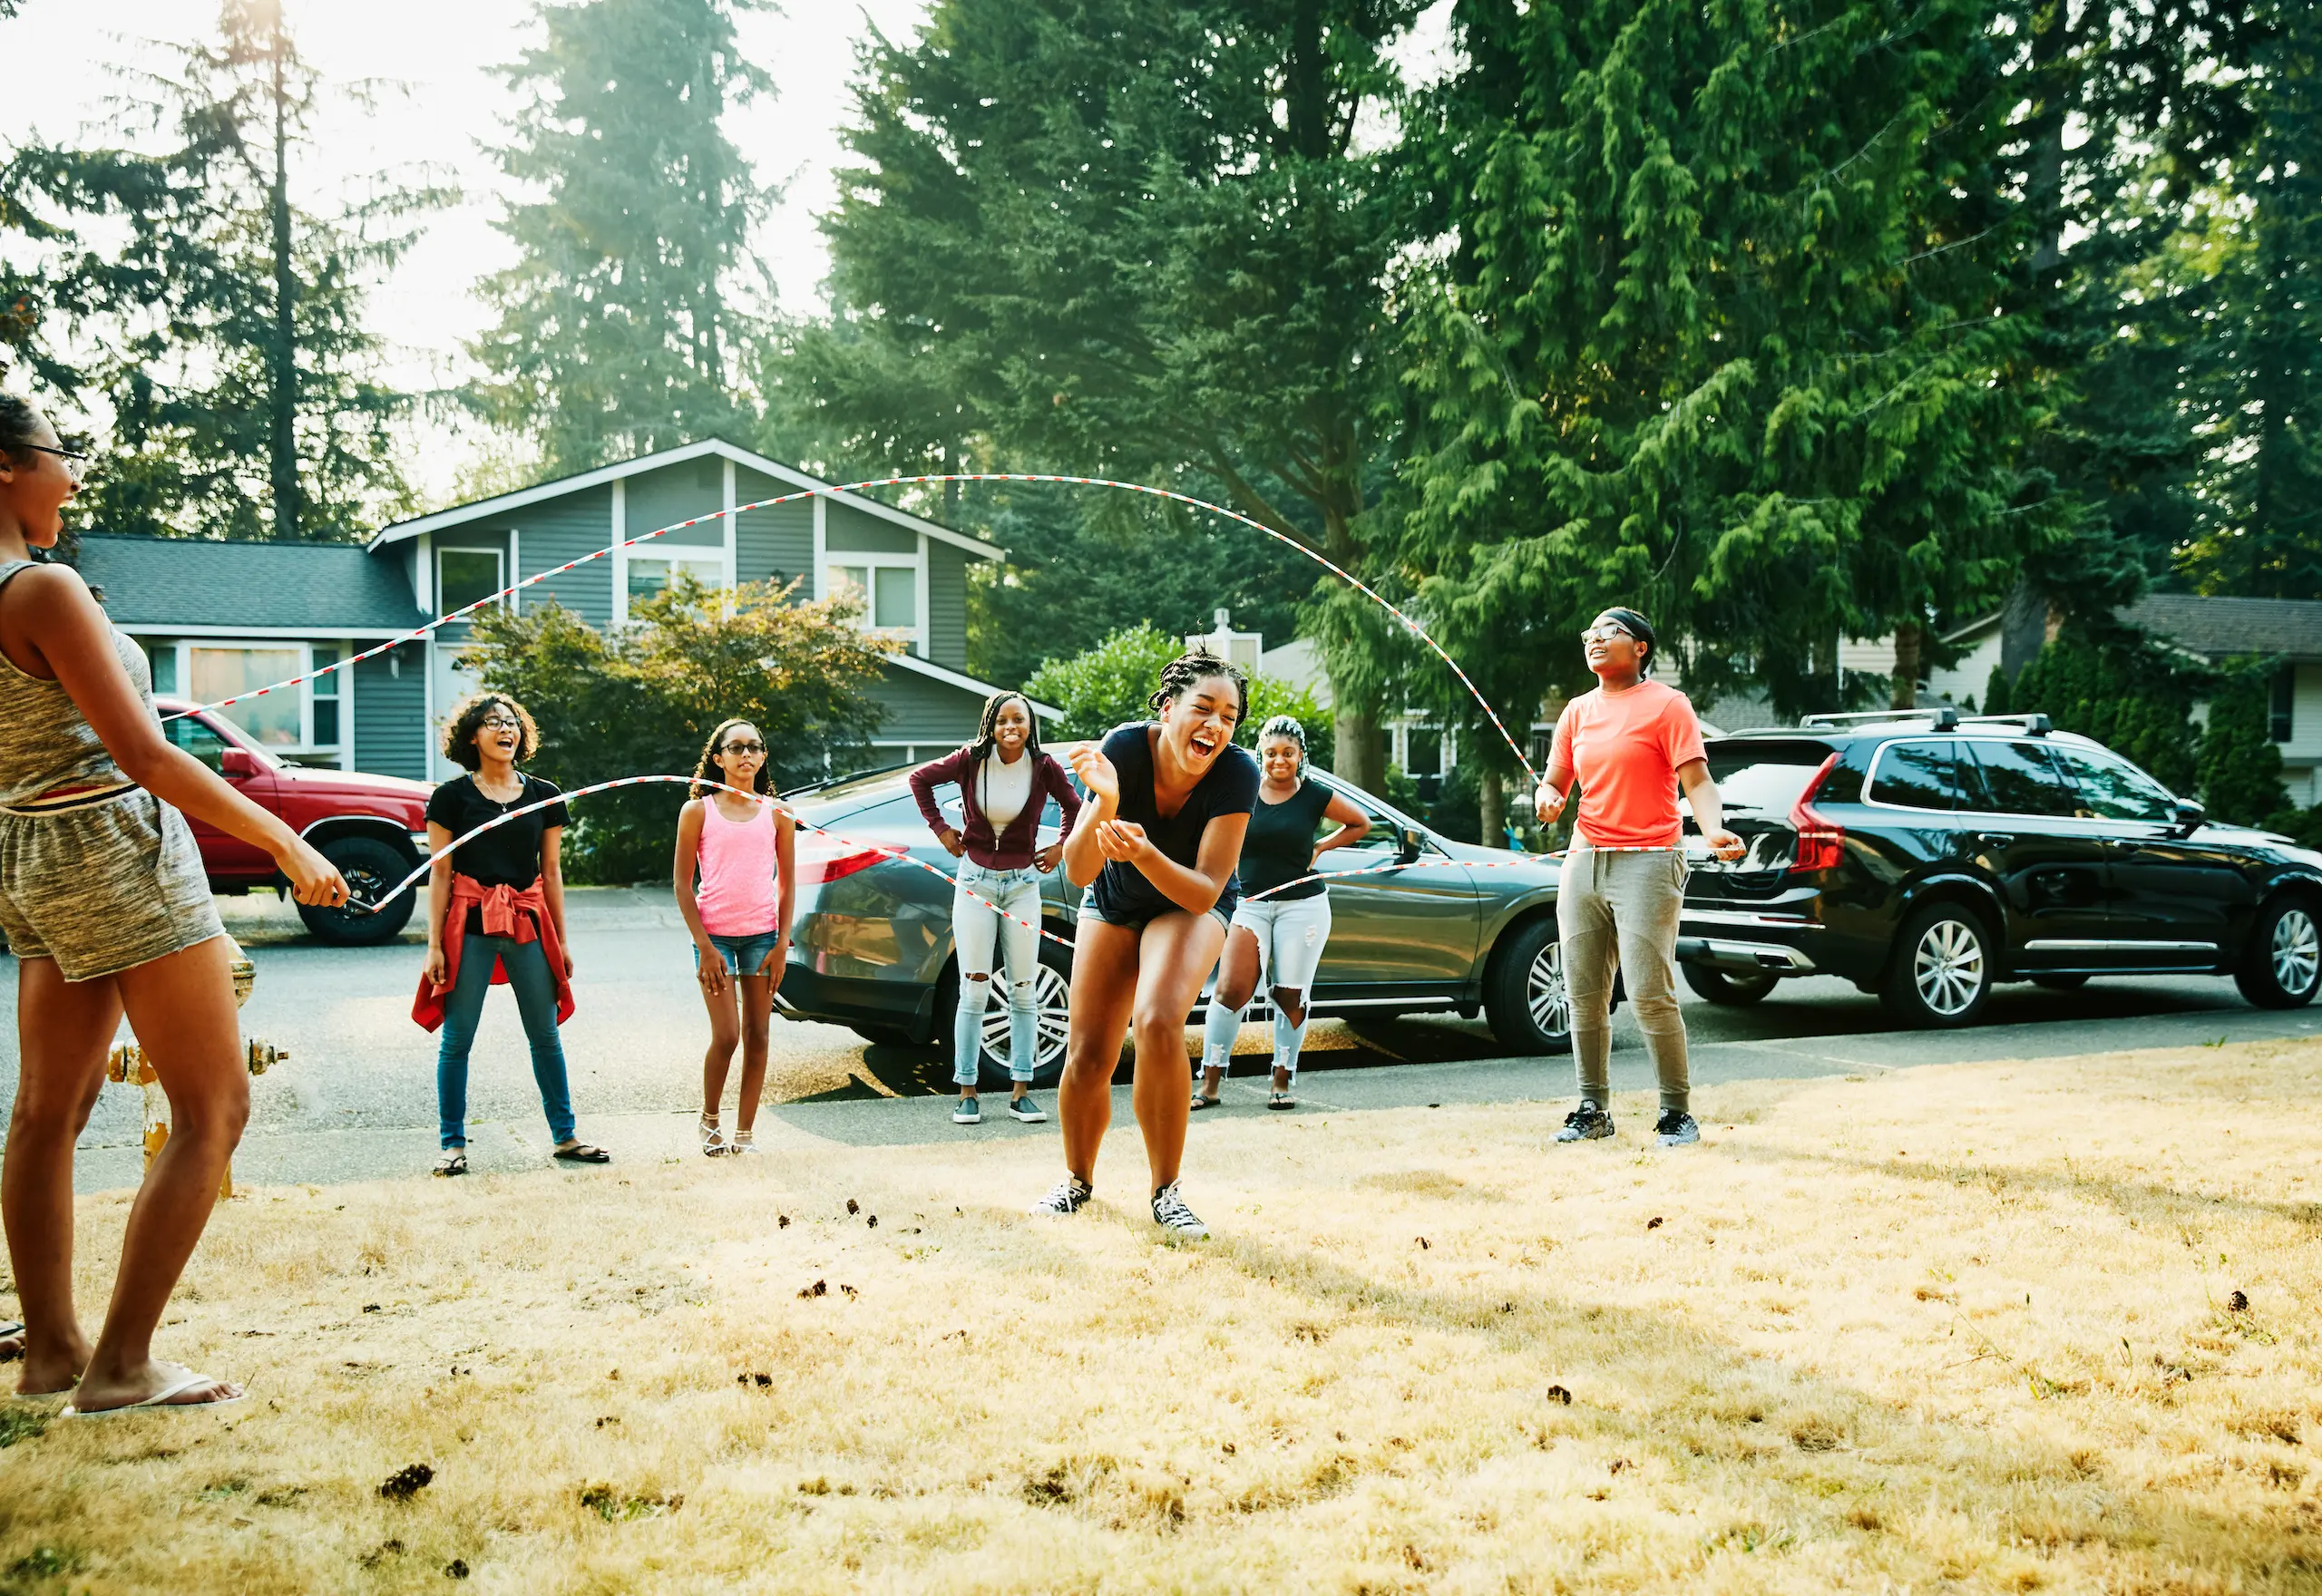 Young girls playing double-dutch in suburban neighborhood